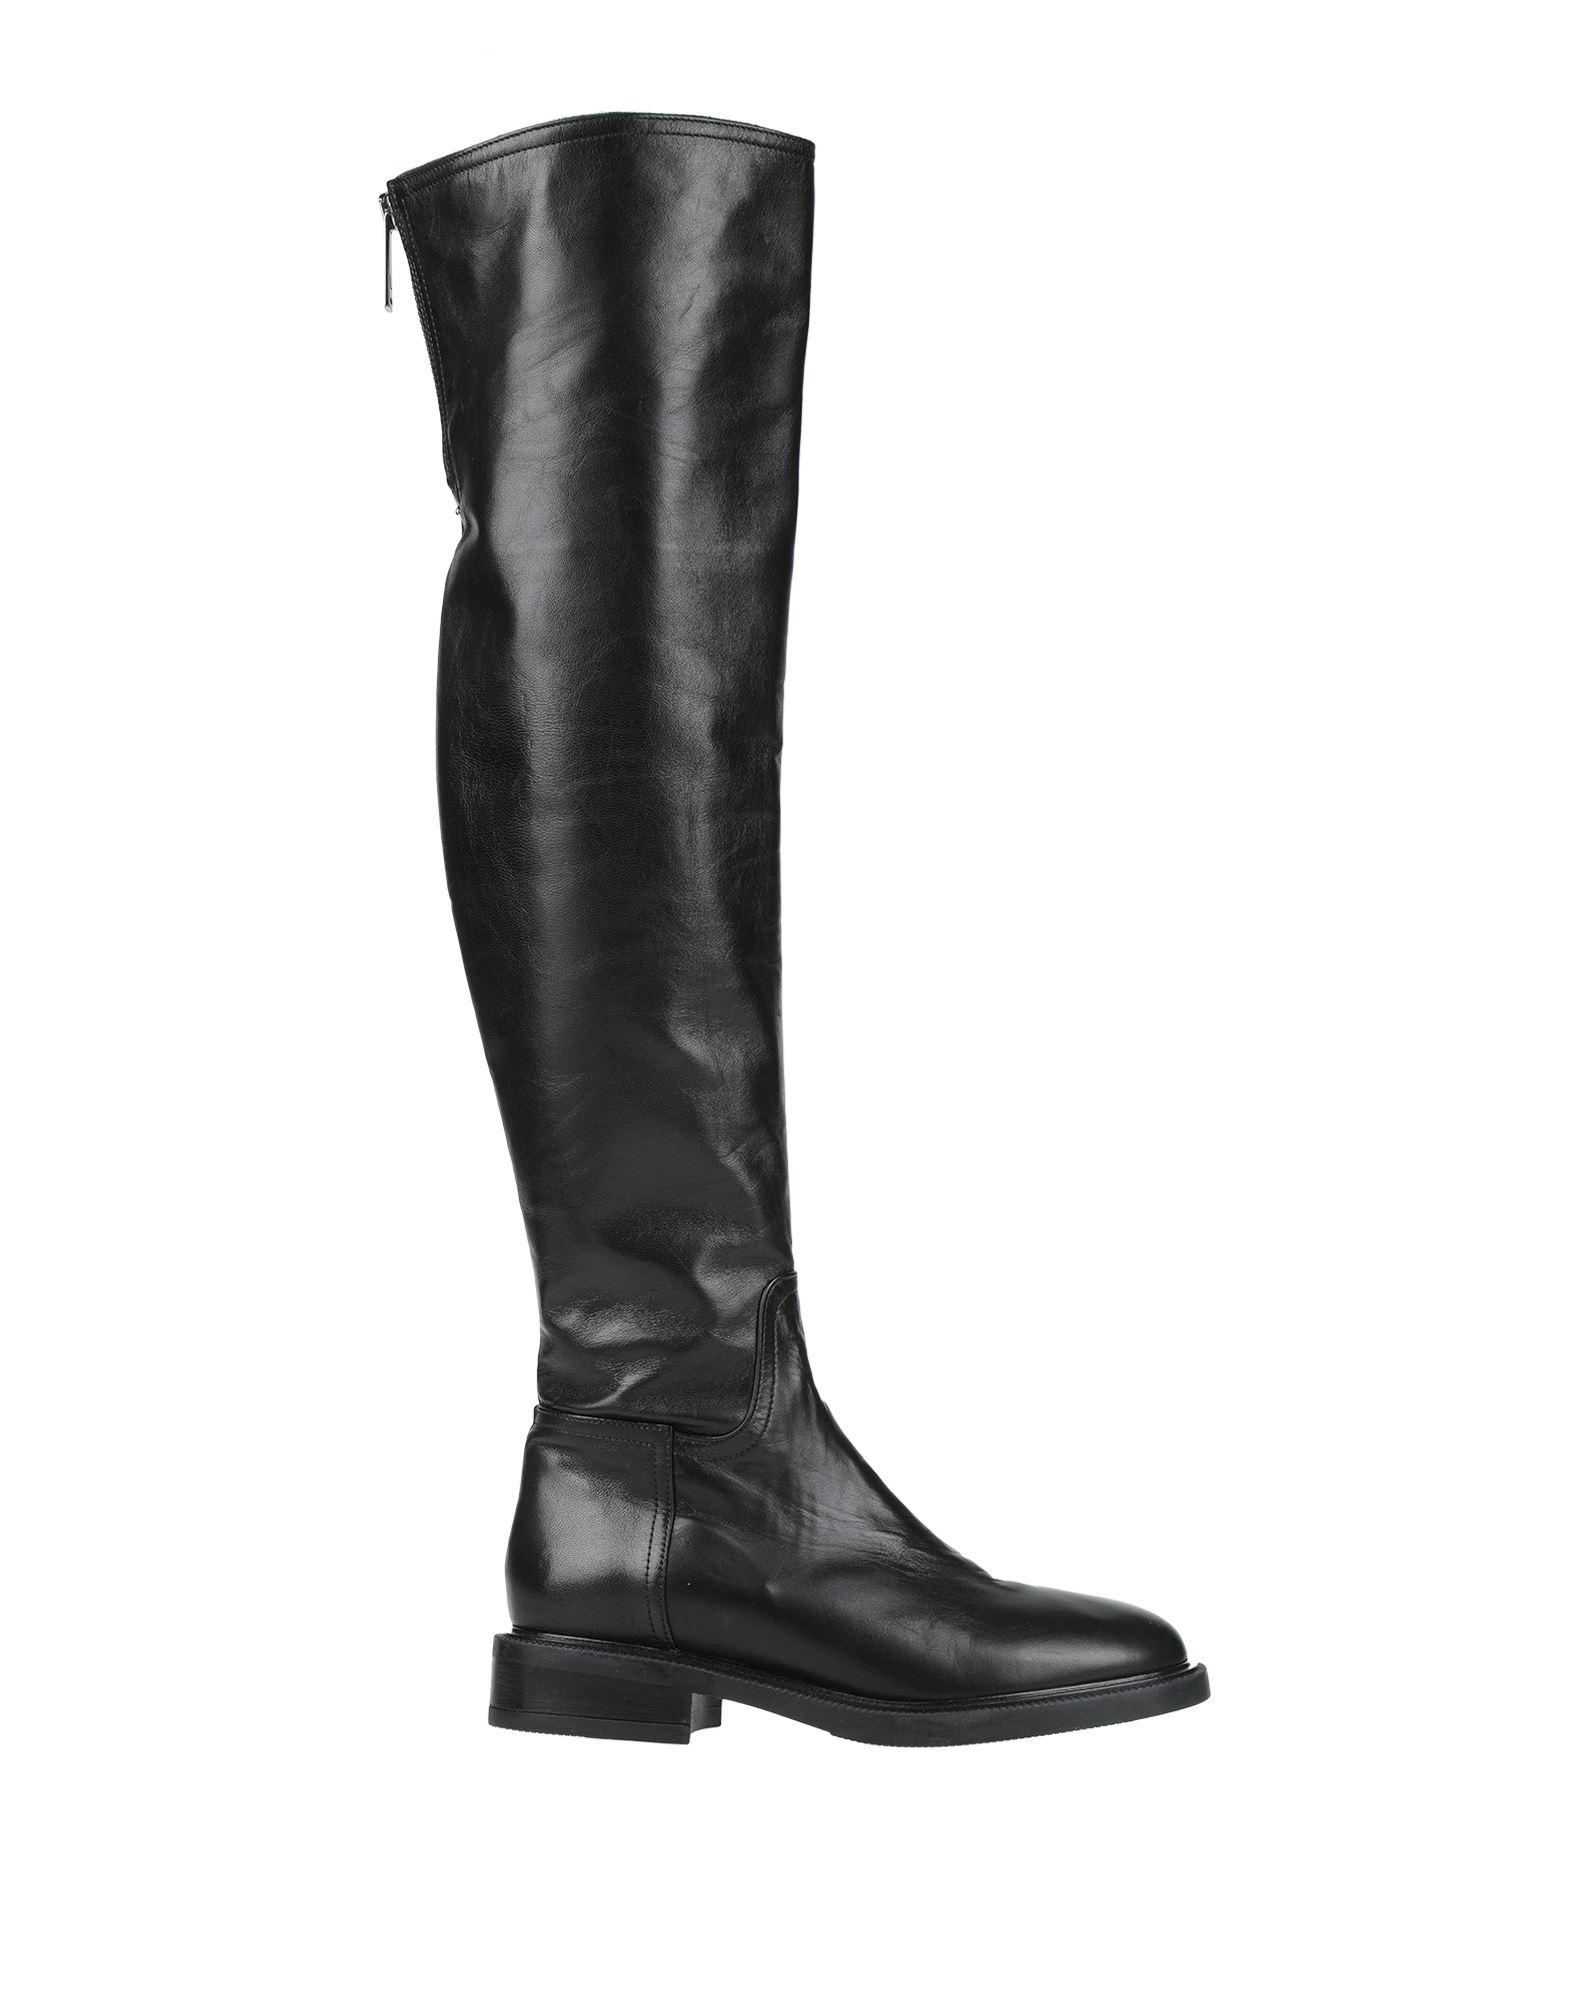 Loretta Pettinari Knee Boots In Black